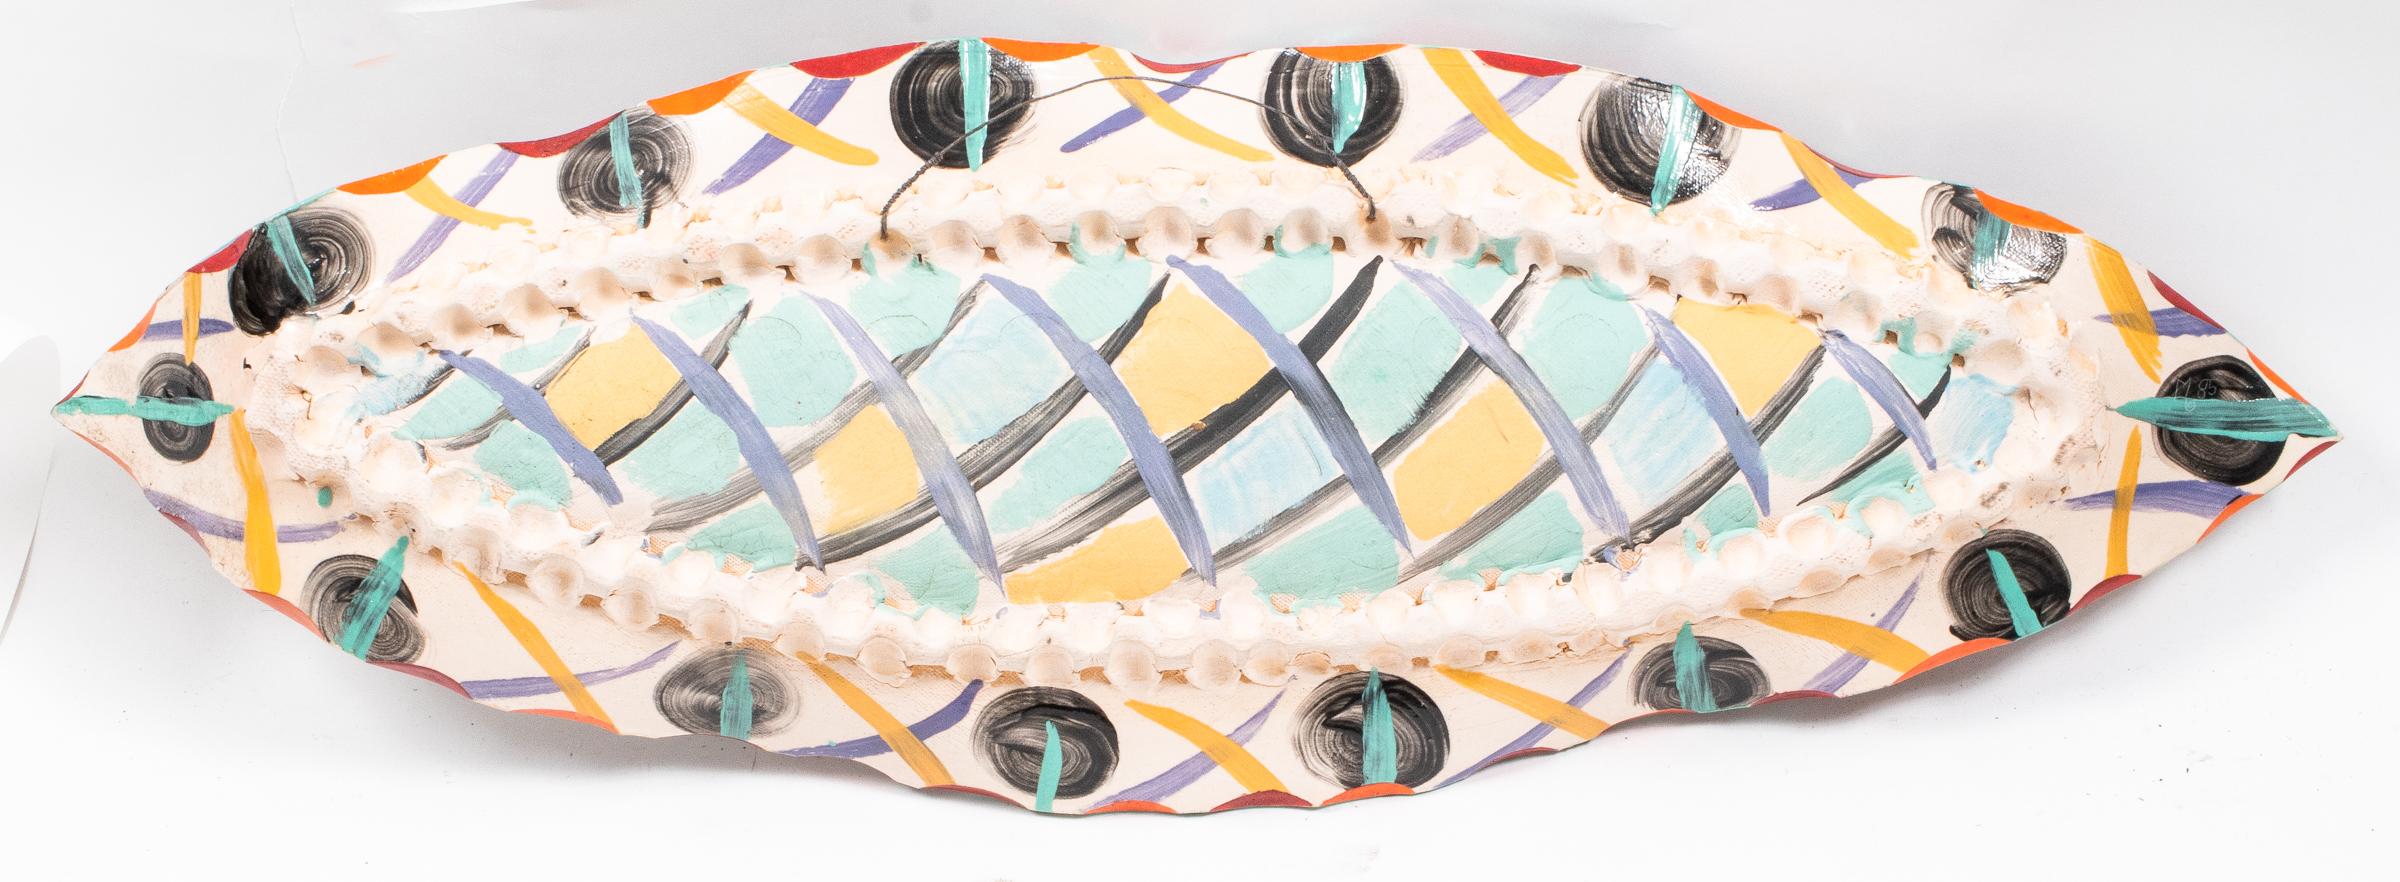 Plato de pescado de cerámica artística moderna estilo Beatrice Wood siglo XX en venta